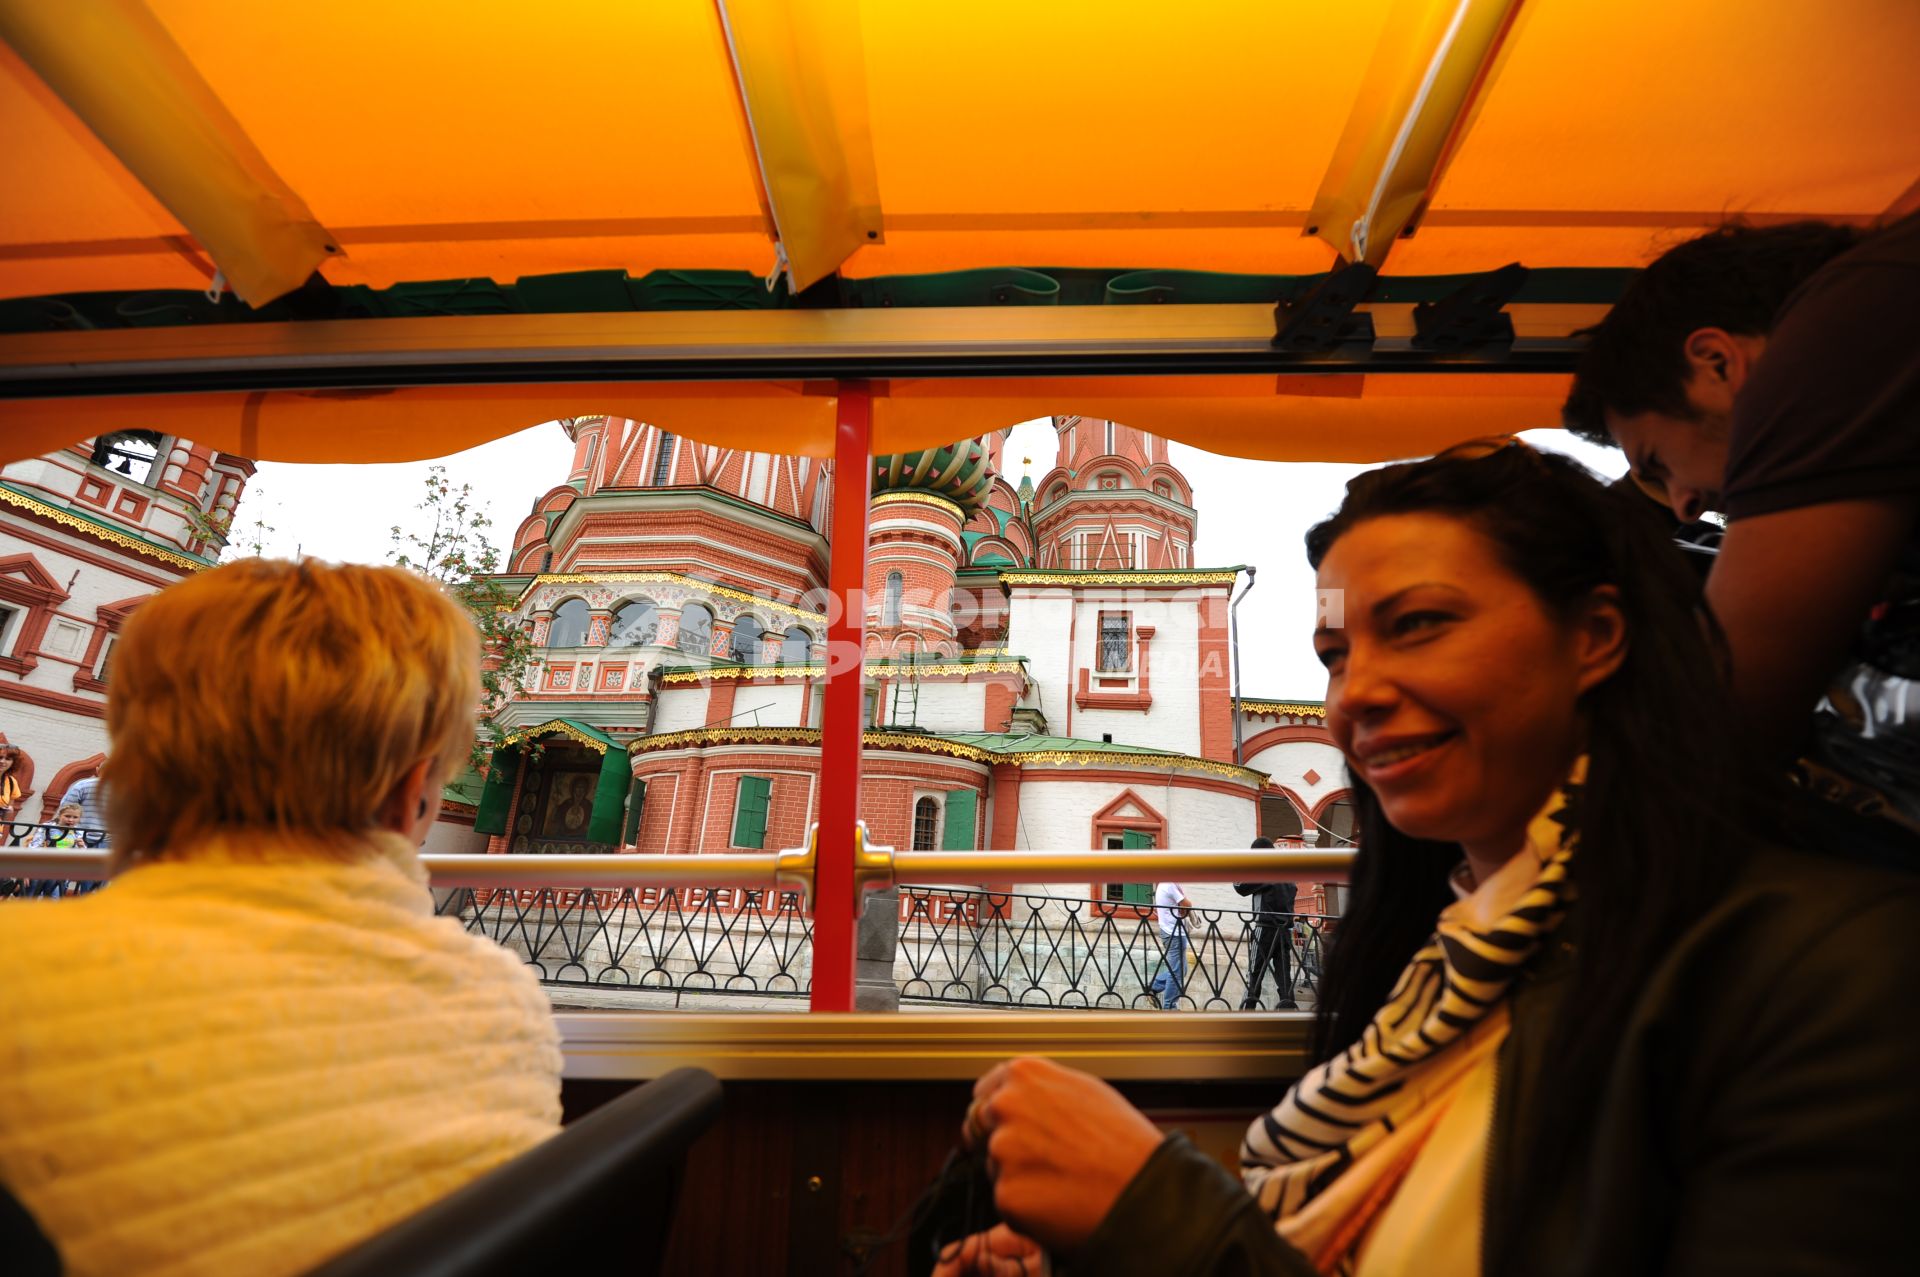 Экскурсия на двухэтажном туристическом автобусе `Даблдекер` по улицам  Москвы. На снимке: пассажиры в салоне автобуса